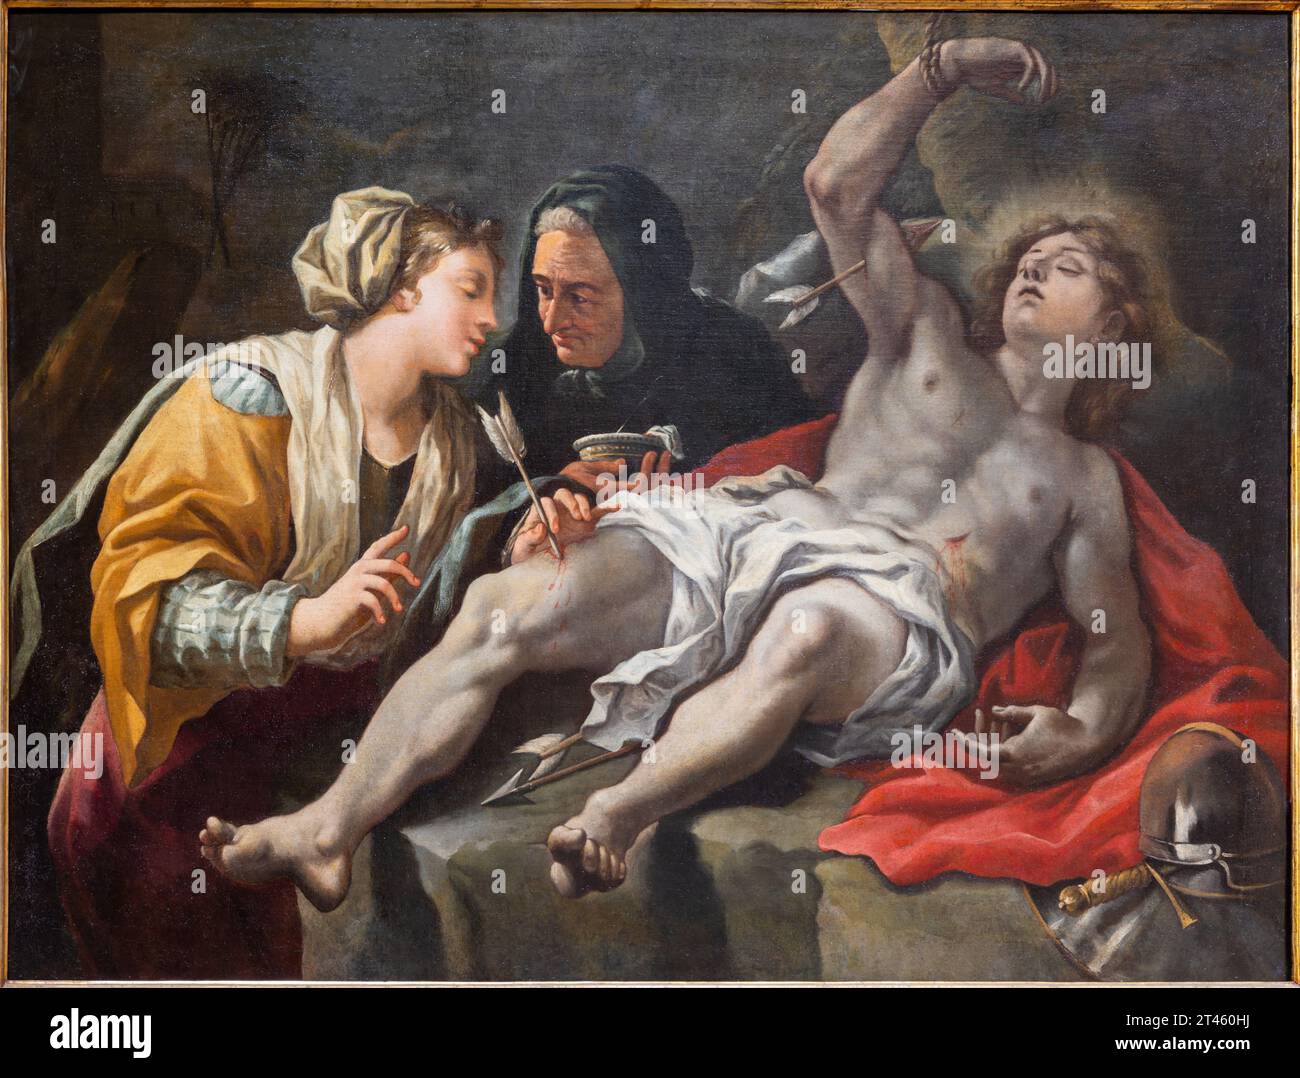 NEAPEL, ITALIEN - 23. APRIL 2023: Das Gemälde des Heiligen Sebastian wurde von der Heiligen Irene in der Kirche Chiesa di San Nicola alla Carita gepflegt Stockfoto